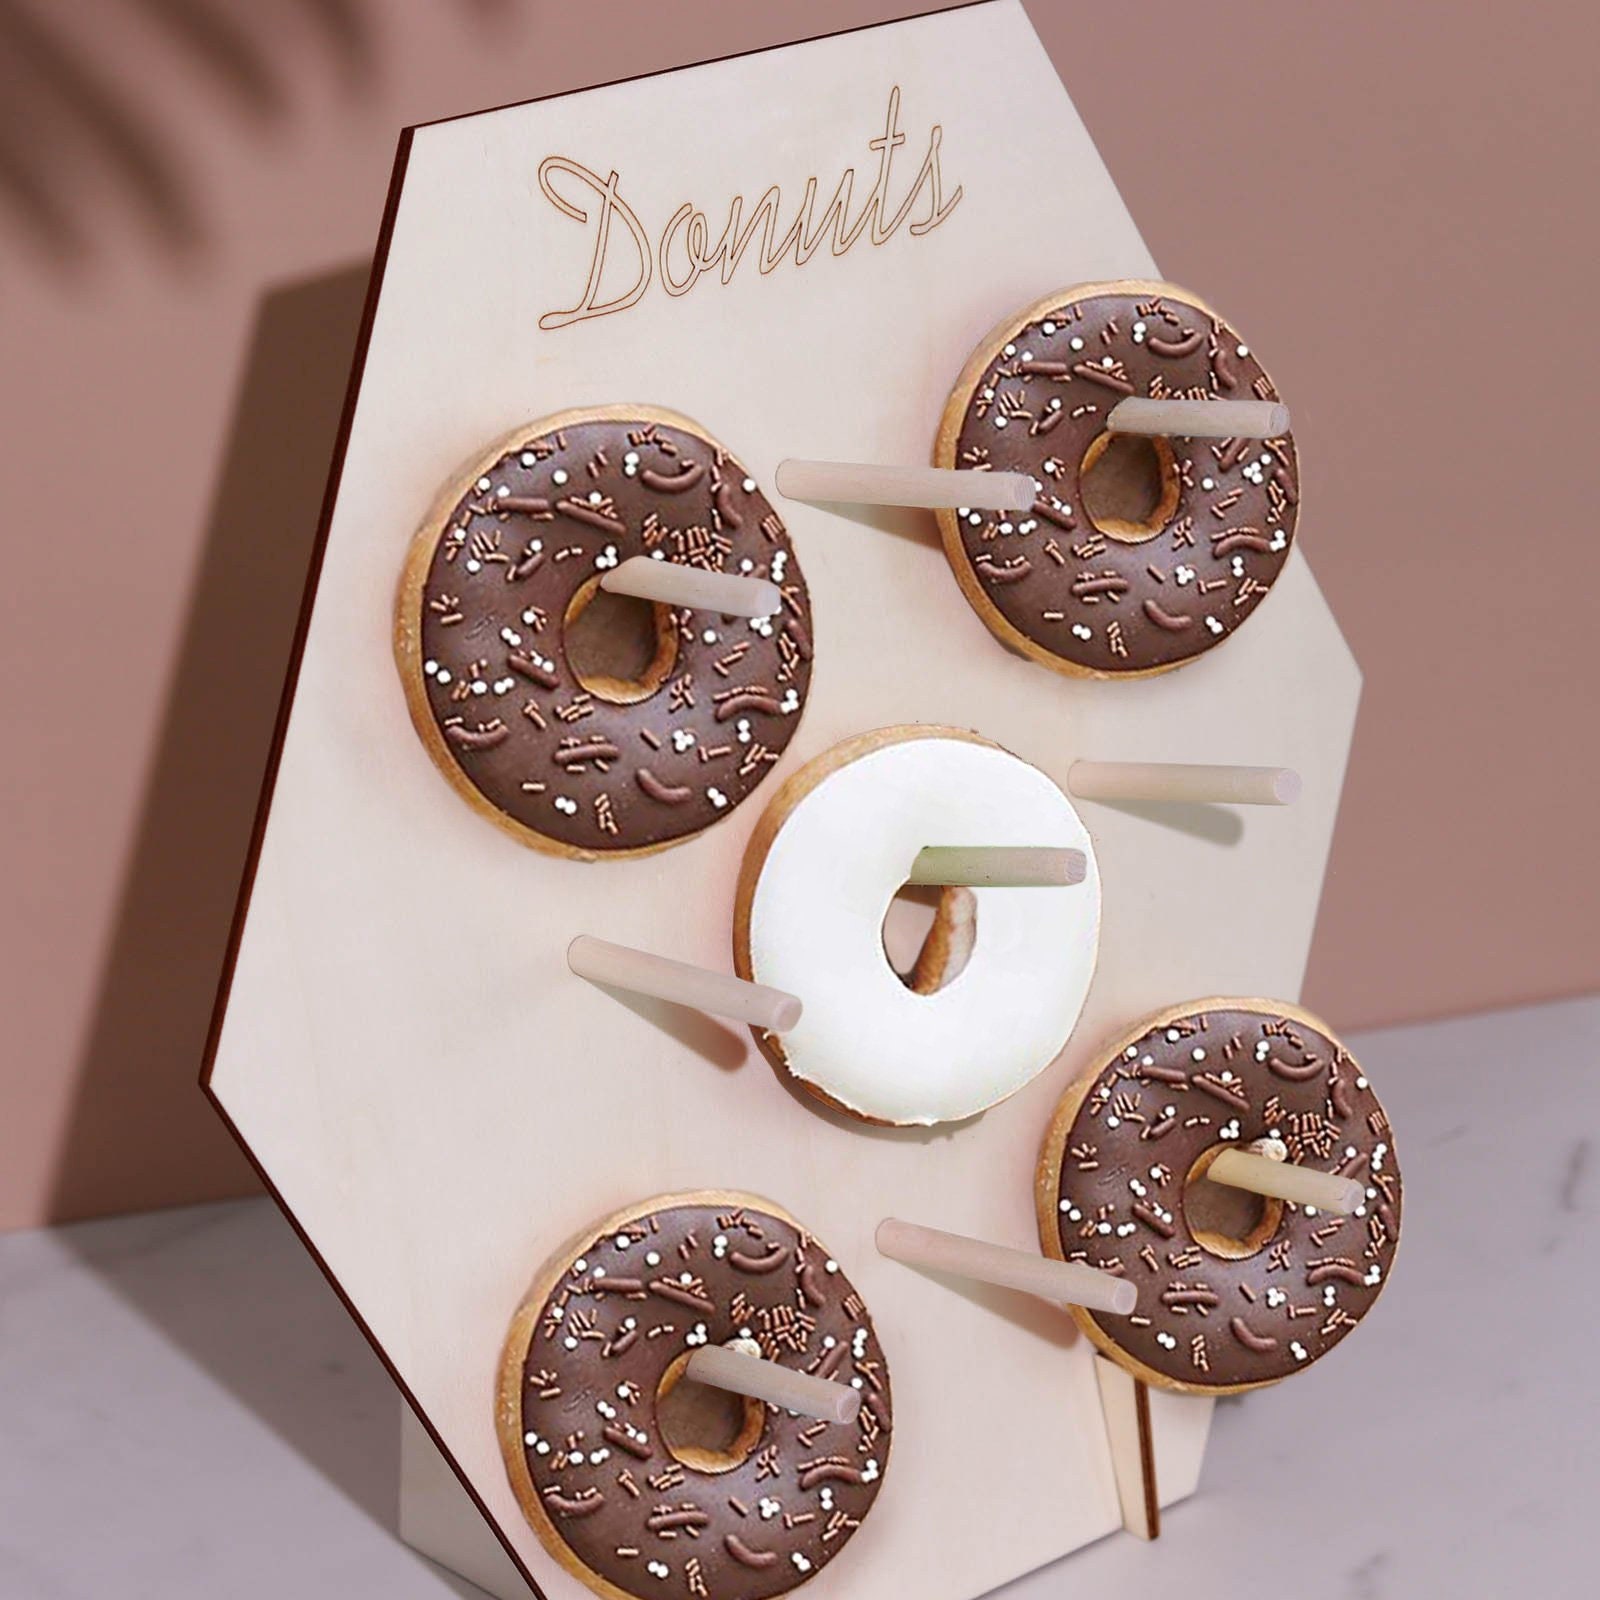 Soporte Expositor Donuts - Ebook Gratuito Incluido, Accesorios